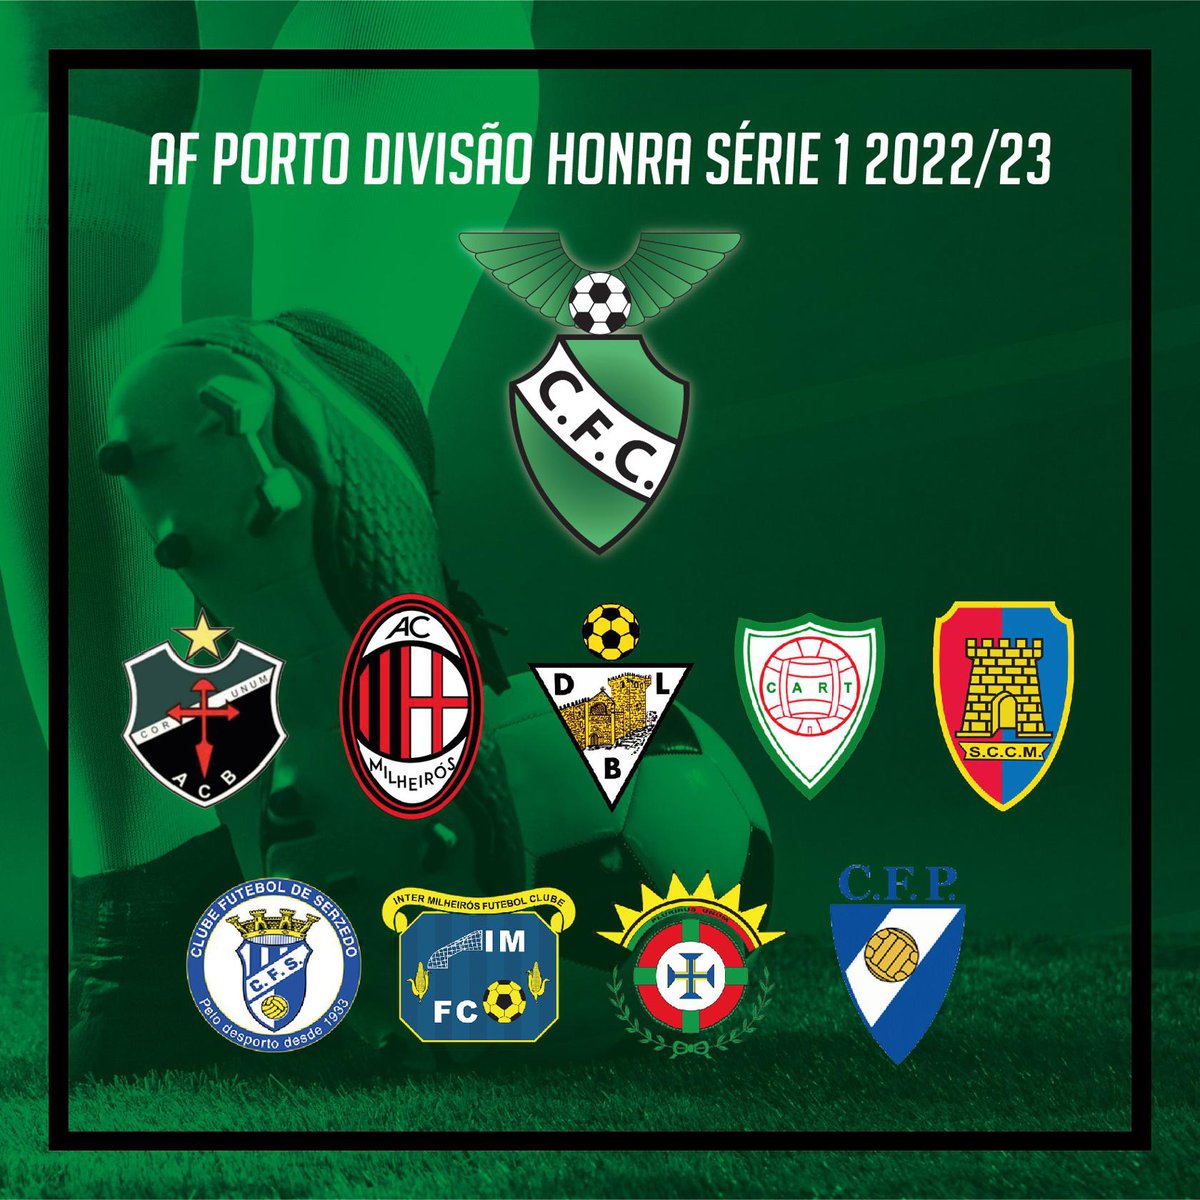 AF PORTO DIVISÃO DE HONRA SÉRIE 1 2022/23